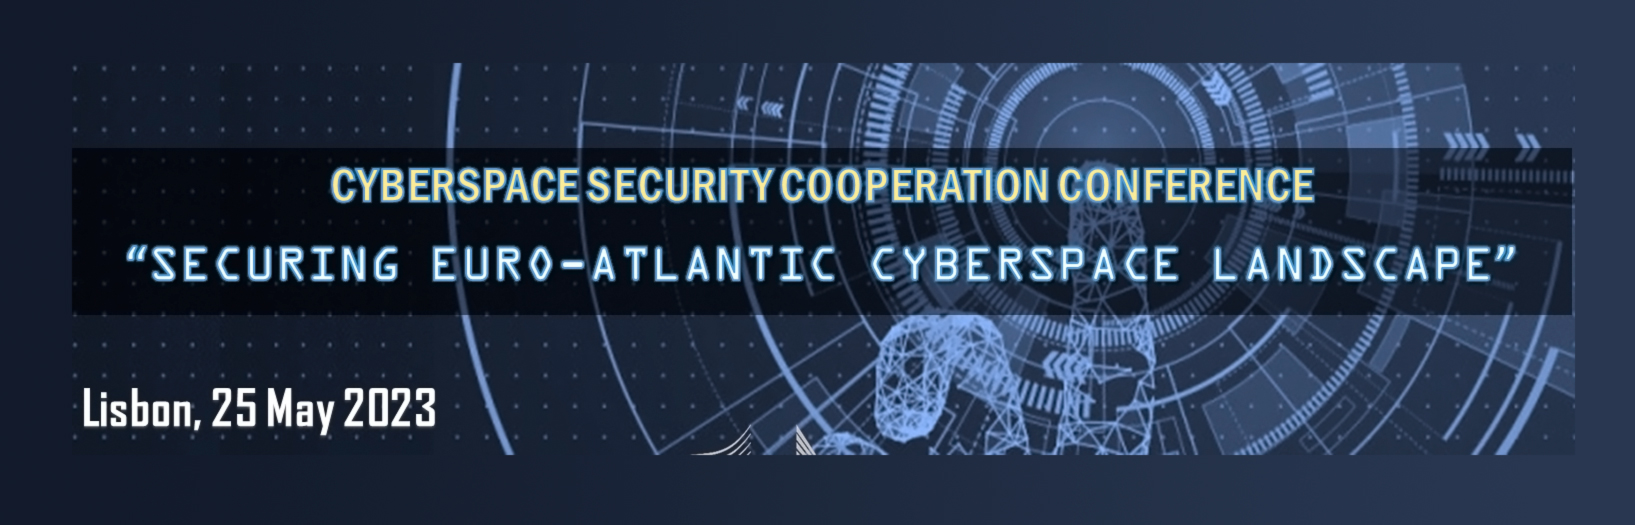 Conferência de Cooperação em Segurança do Ciberespaço - “Securing Euro-Atlantic Cyberspace Landscape”